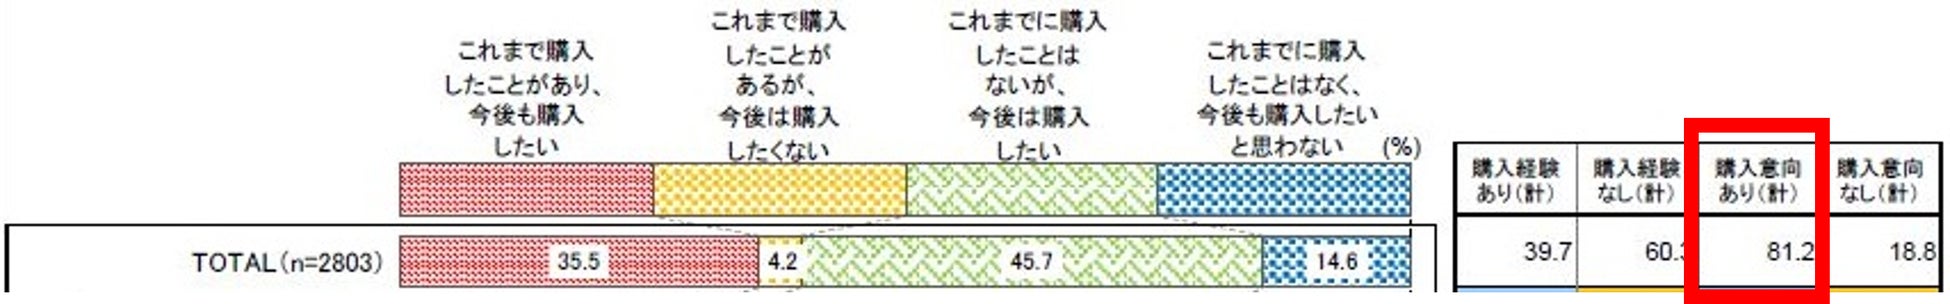 【新製品】繰り返し洗って使える「陶磁器のストロー」を9月8日(木)より販売開始！日本の伝統工芸がサスティナブルな製品を生み出しました。